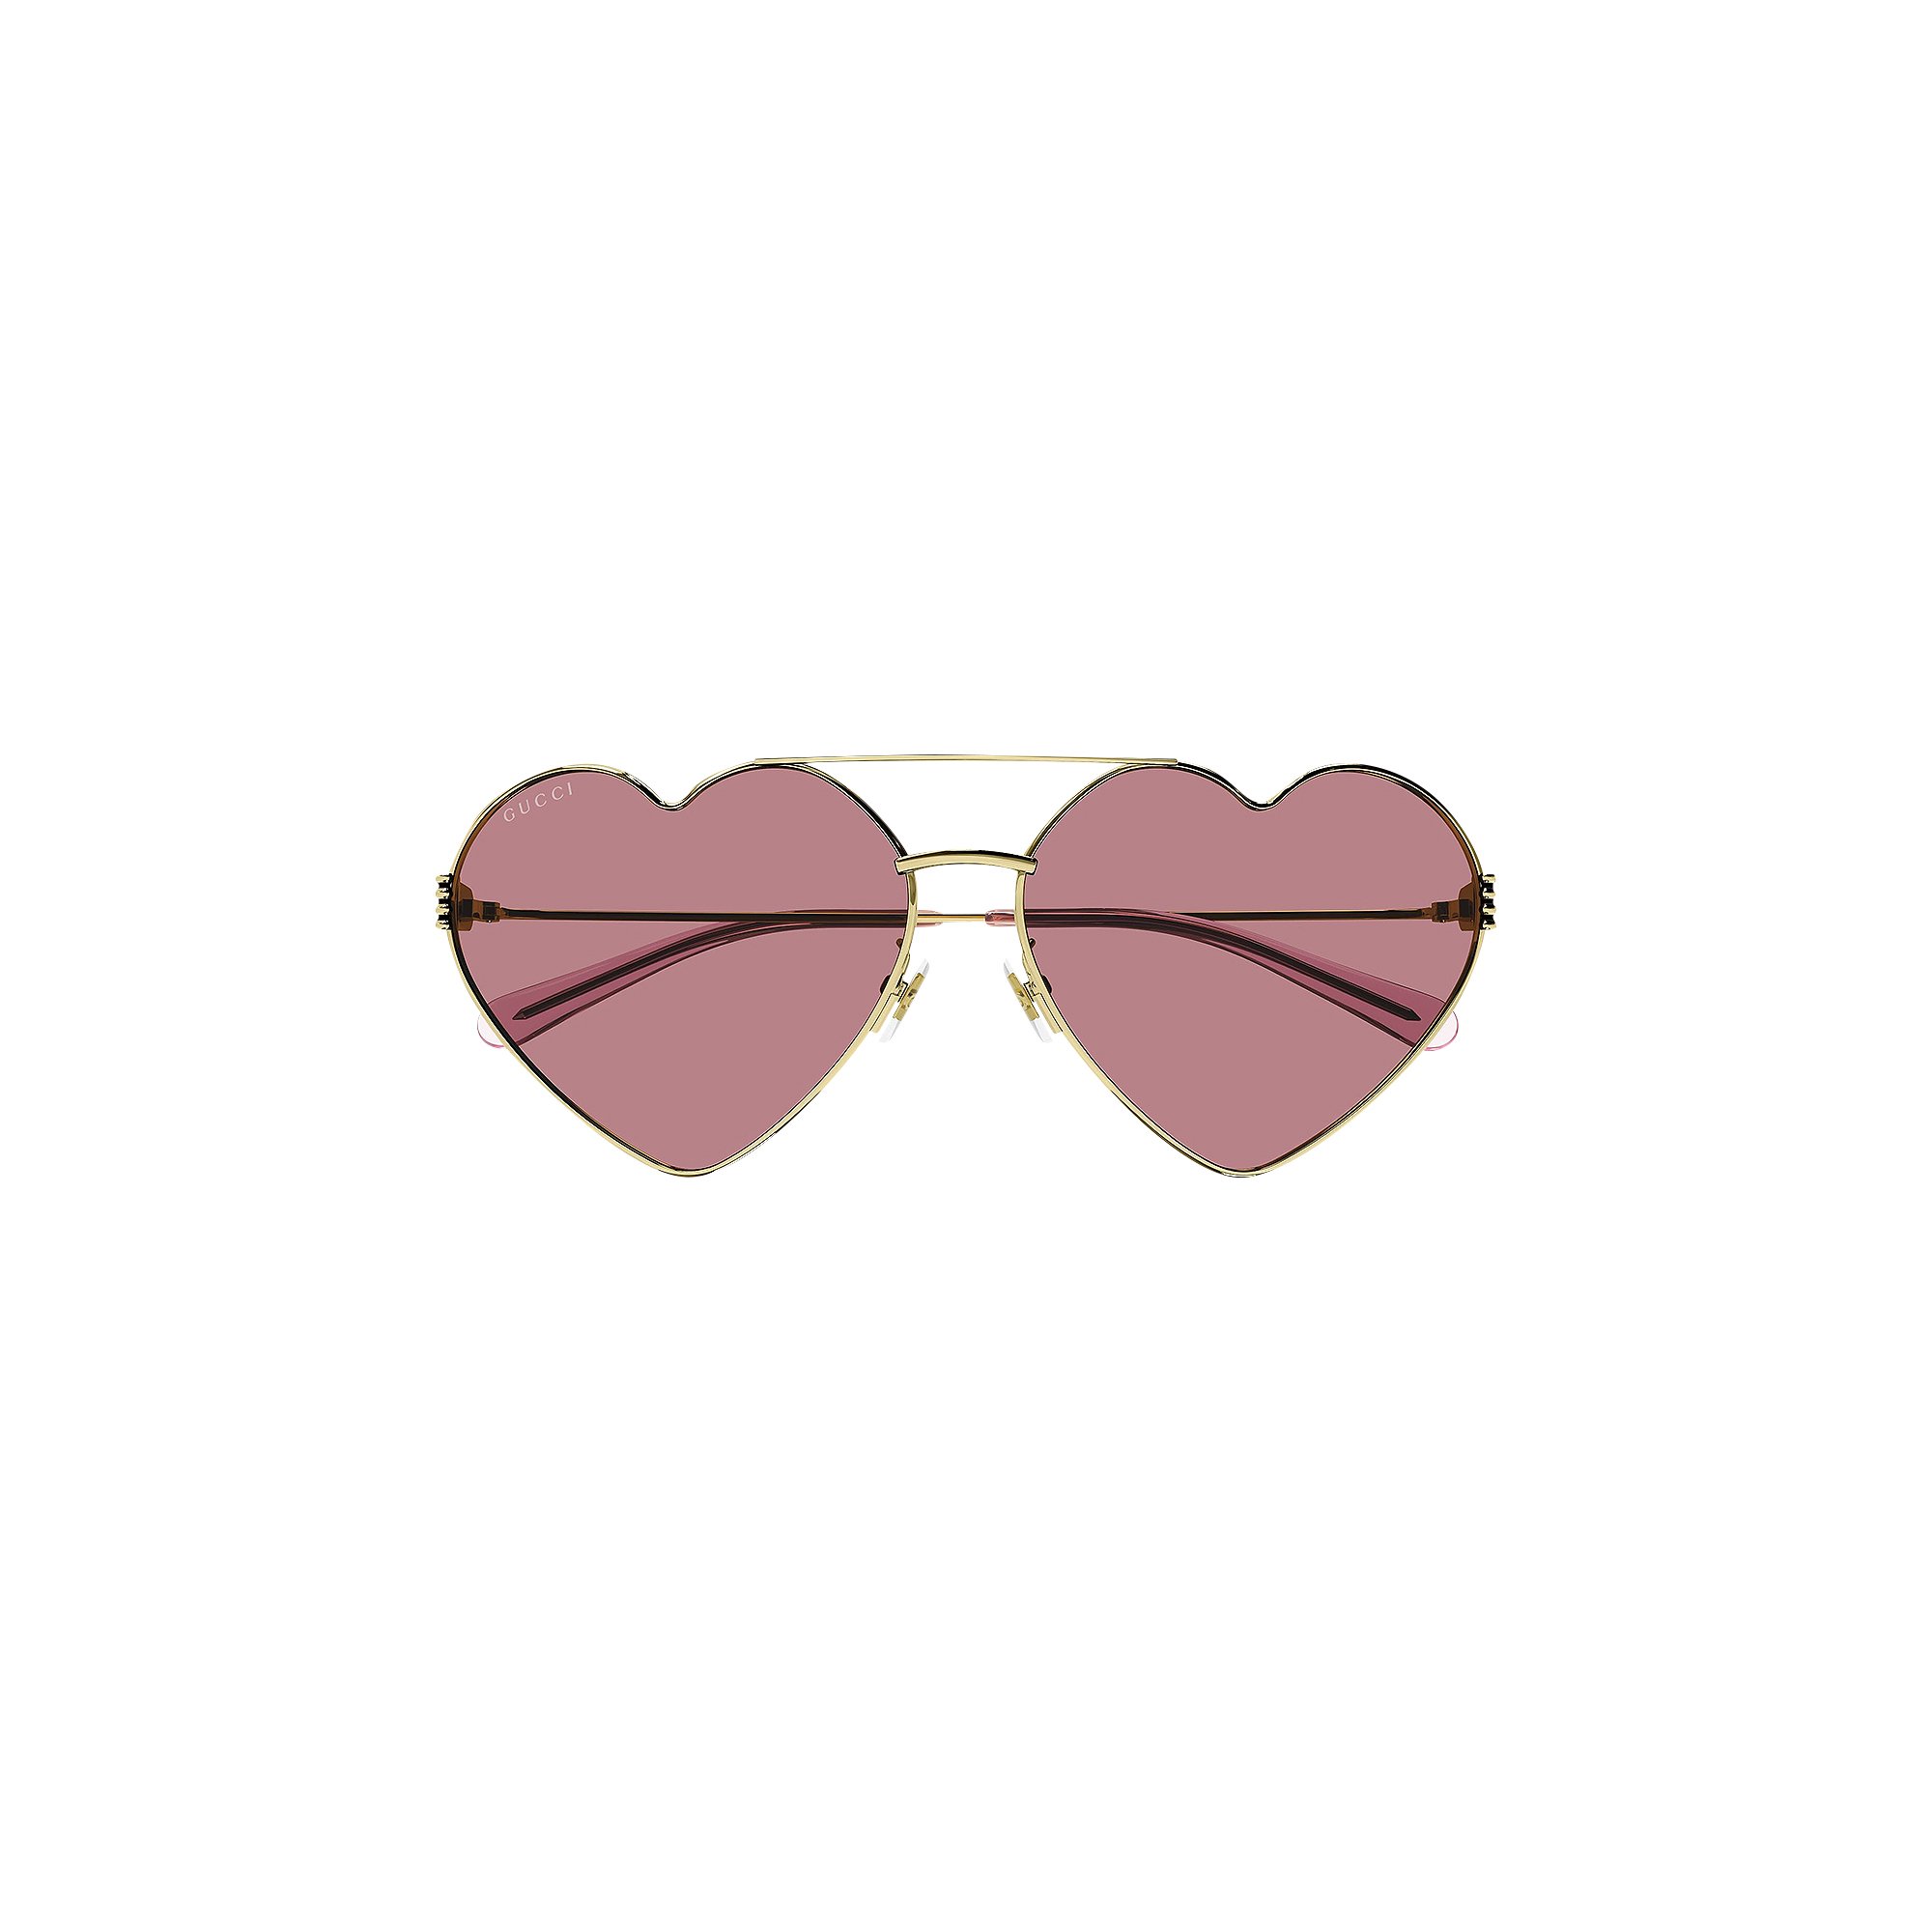 Солнцезащитные очки Gucci в форме сердца, золотистые